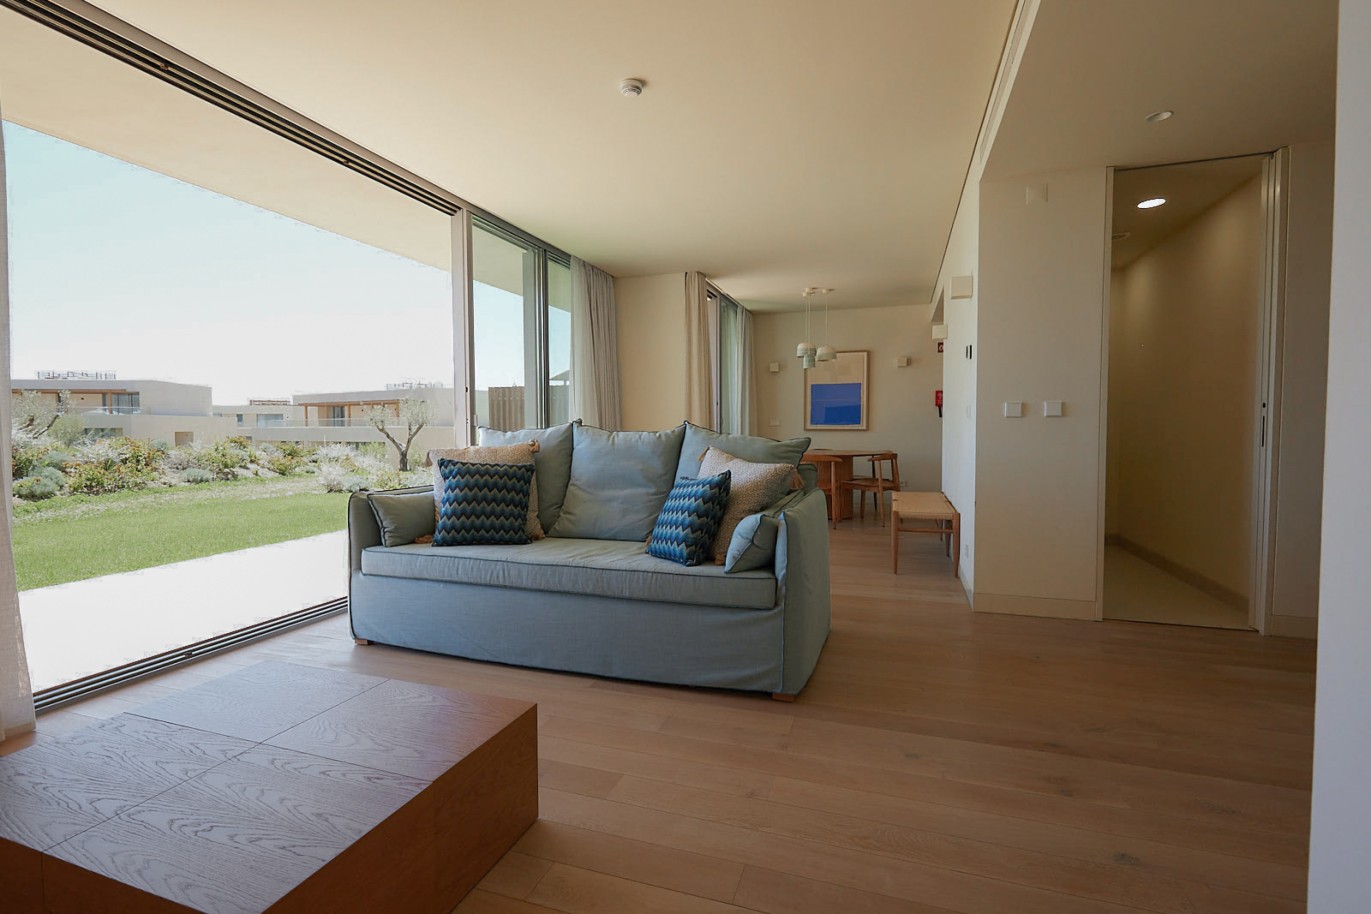 Piso de 2 dormitorios en complejo, en venta en Porches, Algarve_229225